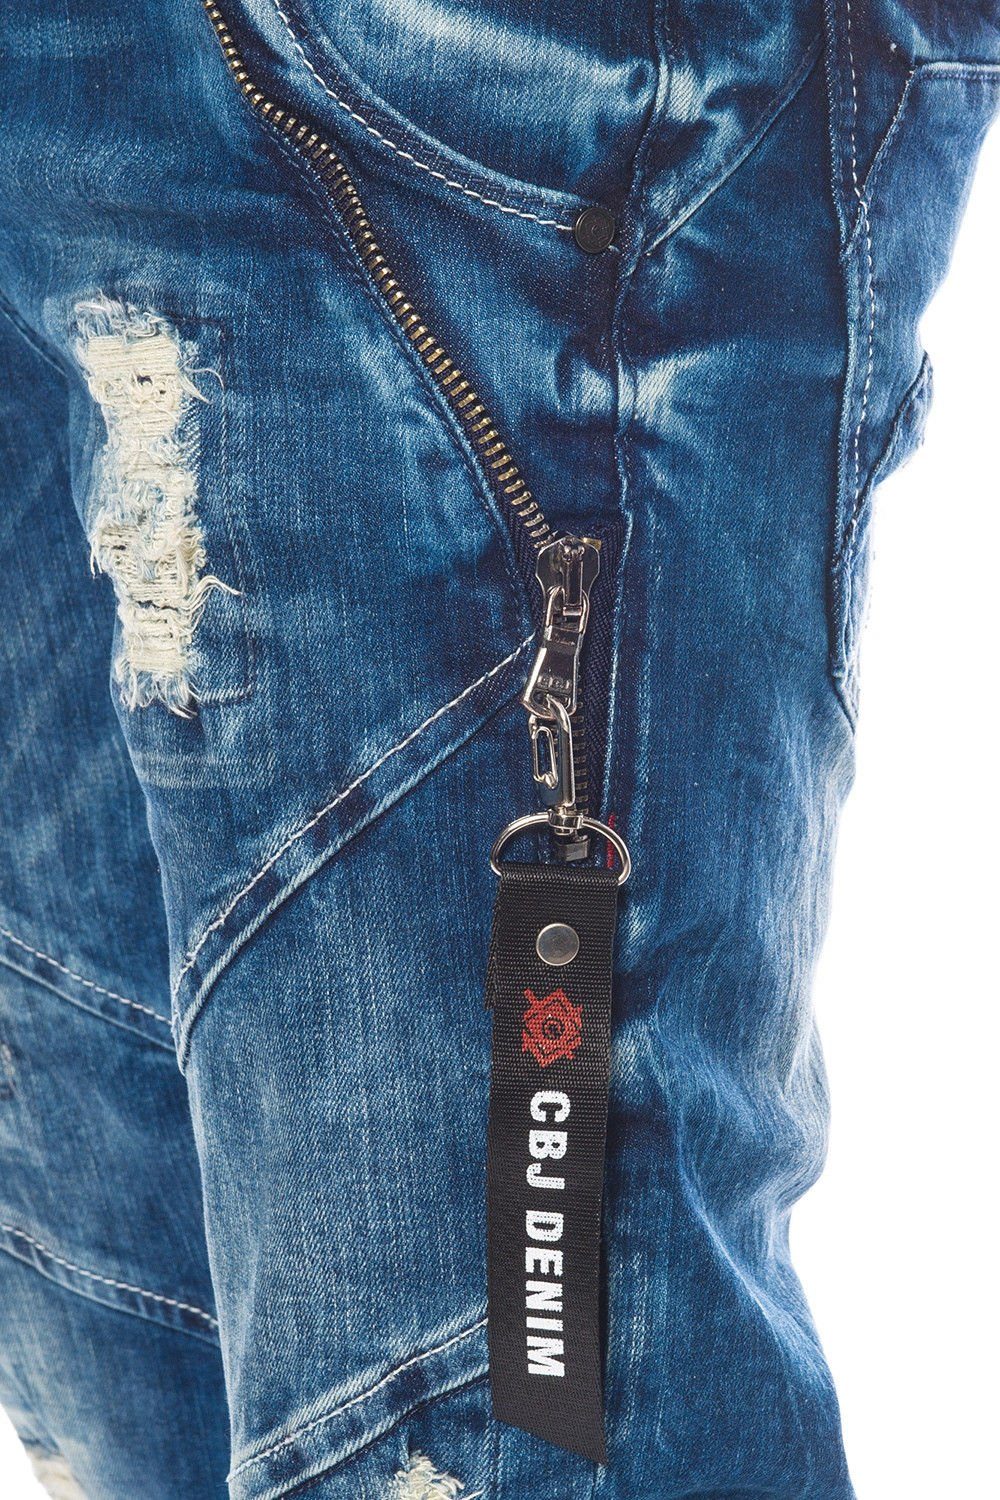 Cipo & mit Reißverschlussapplikationen Herren Jeans destroyed Jeans Baxx destroyed und mit Look Reißverschlussapplikationen Look und Slim-fit-Jeans